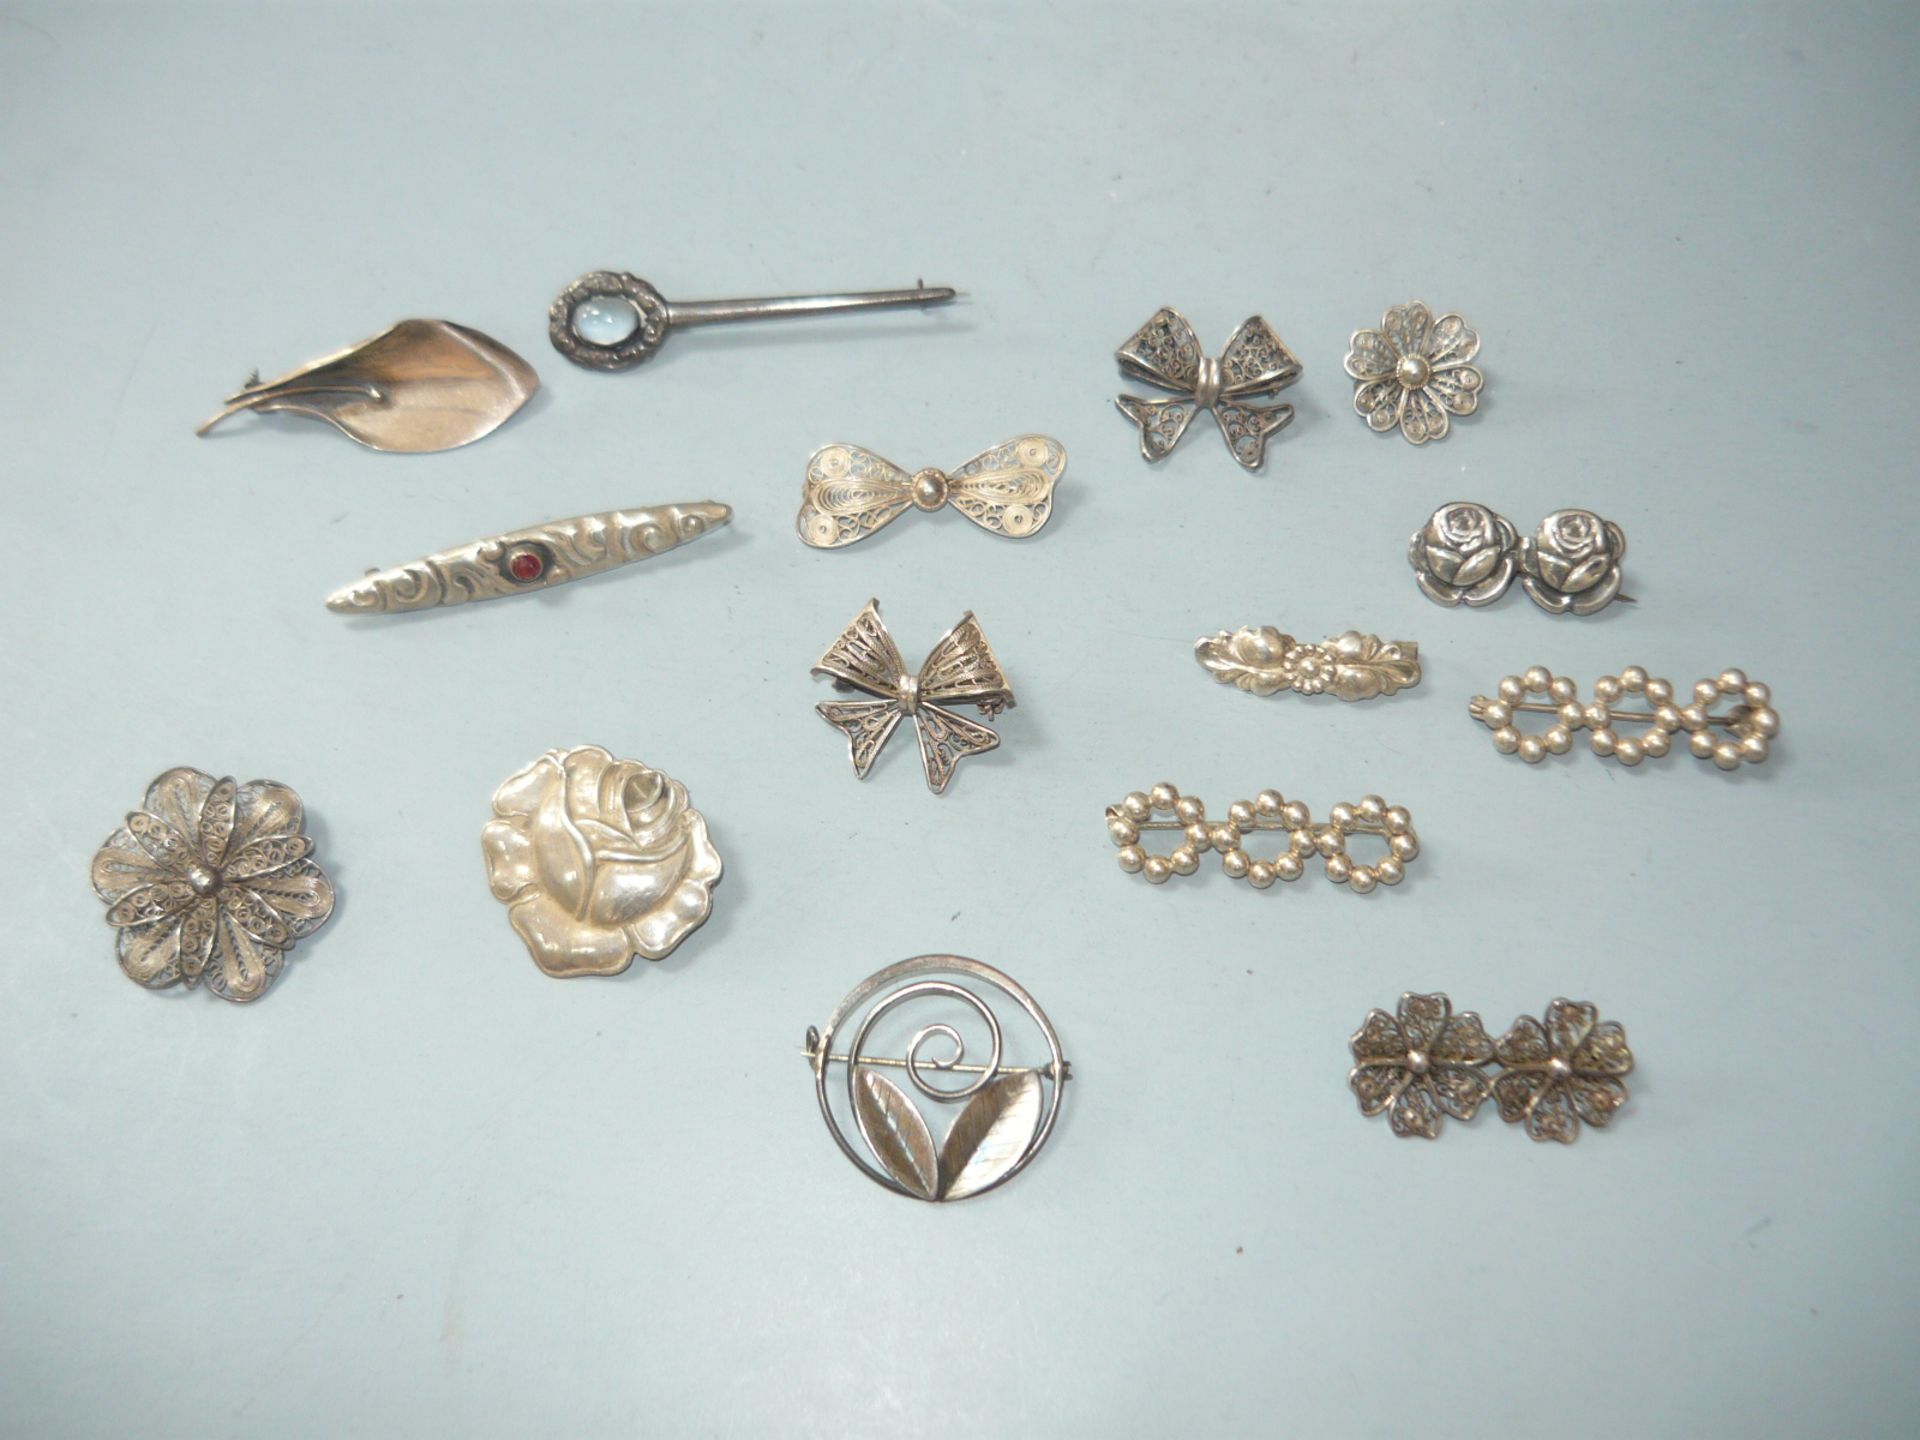 Sammlung 15 alte oder antike Dänische Silberbroschen. Verschiedene Formen und Größen. Alle min 800er